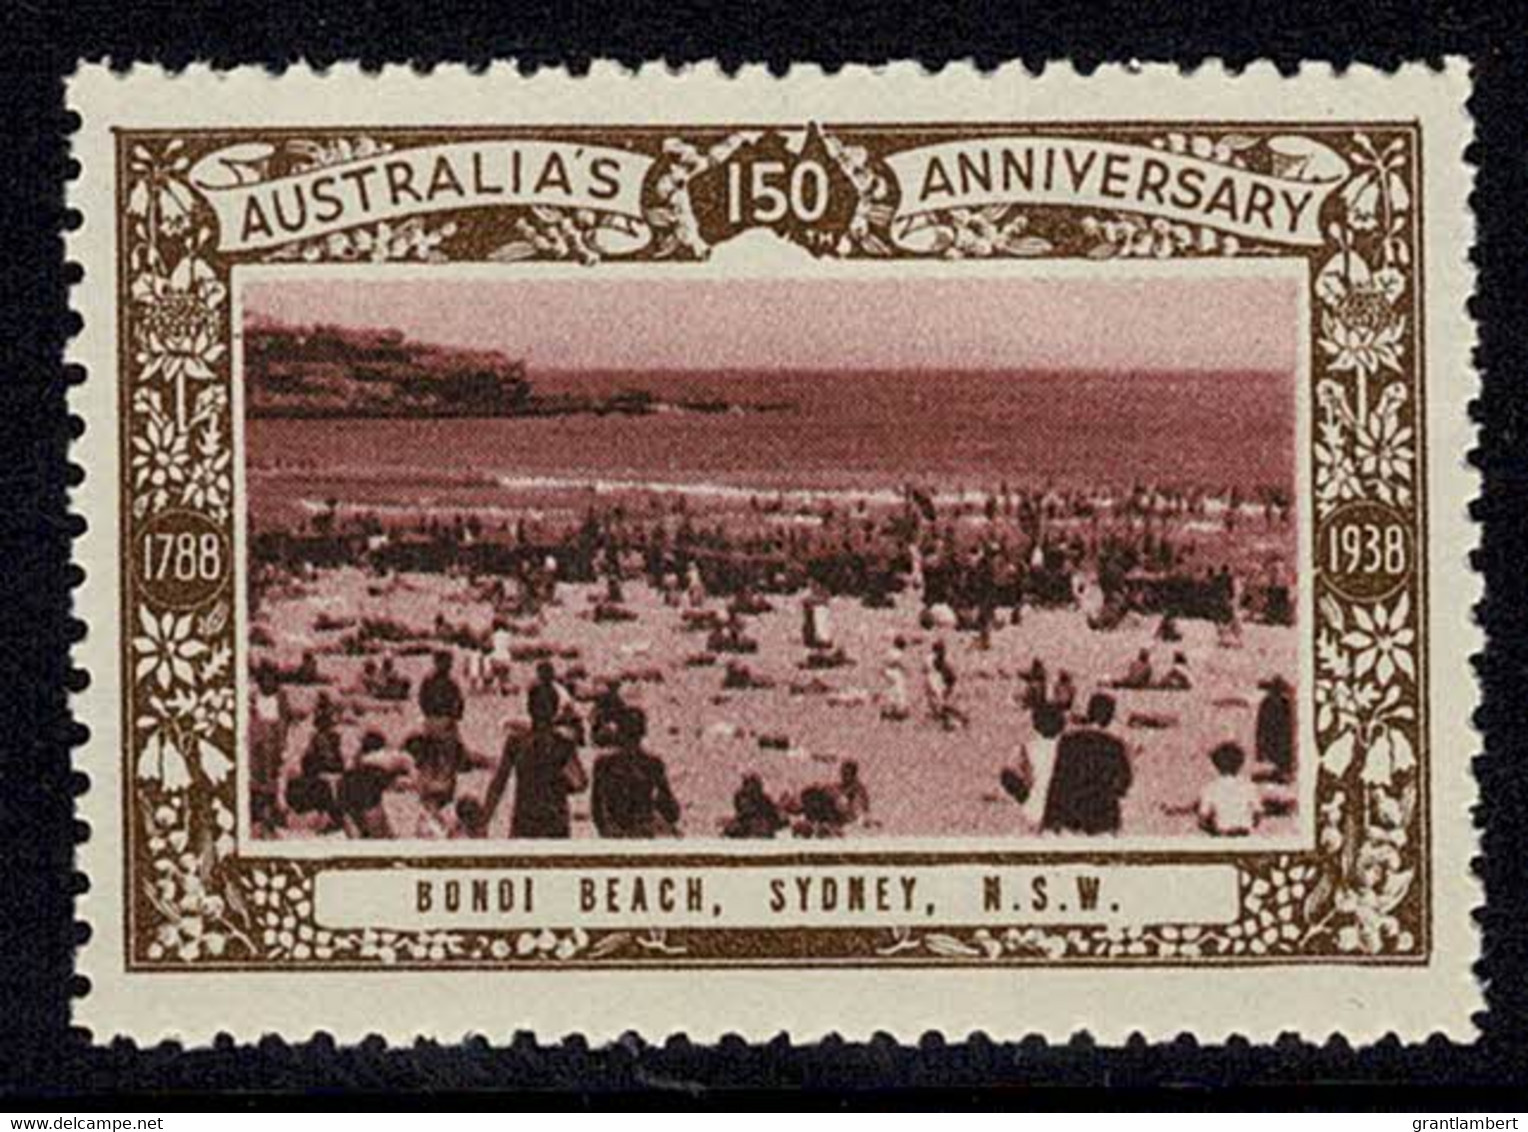 Australia 1938 Bondi Beach, Sydney - NSW 150th Anniversary Cinderella MNH - Werbemarken, Vignetten